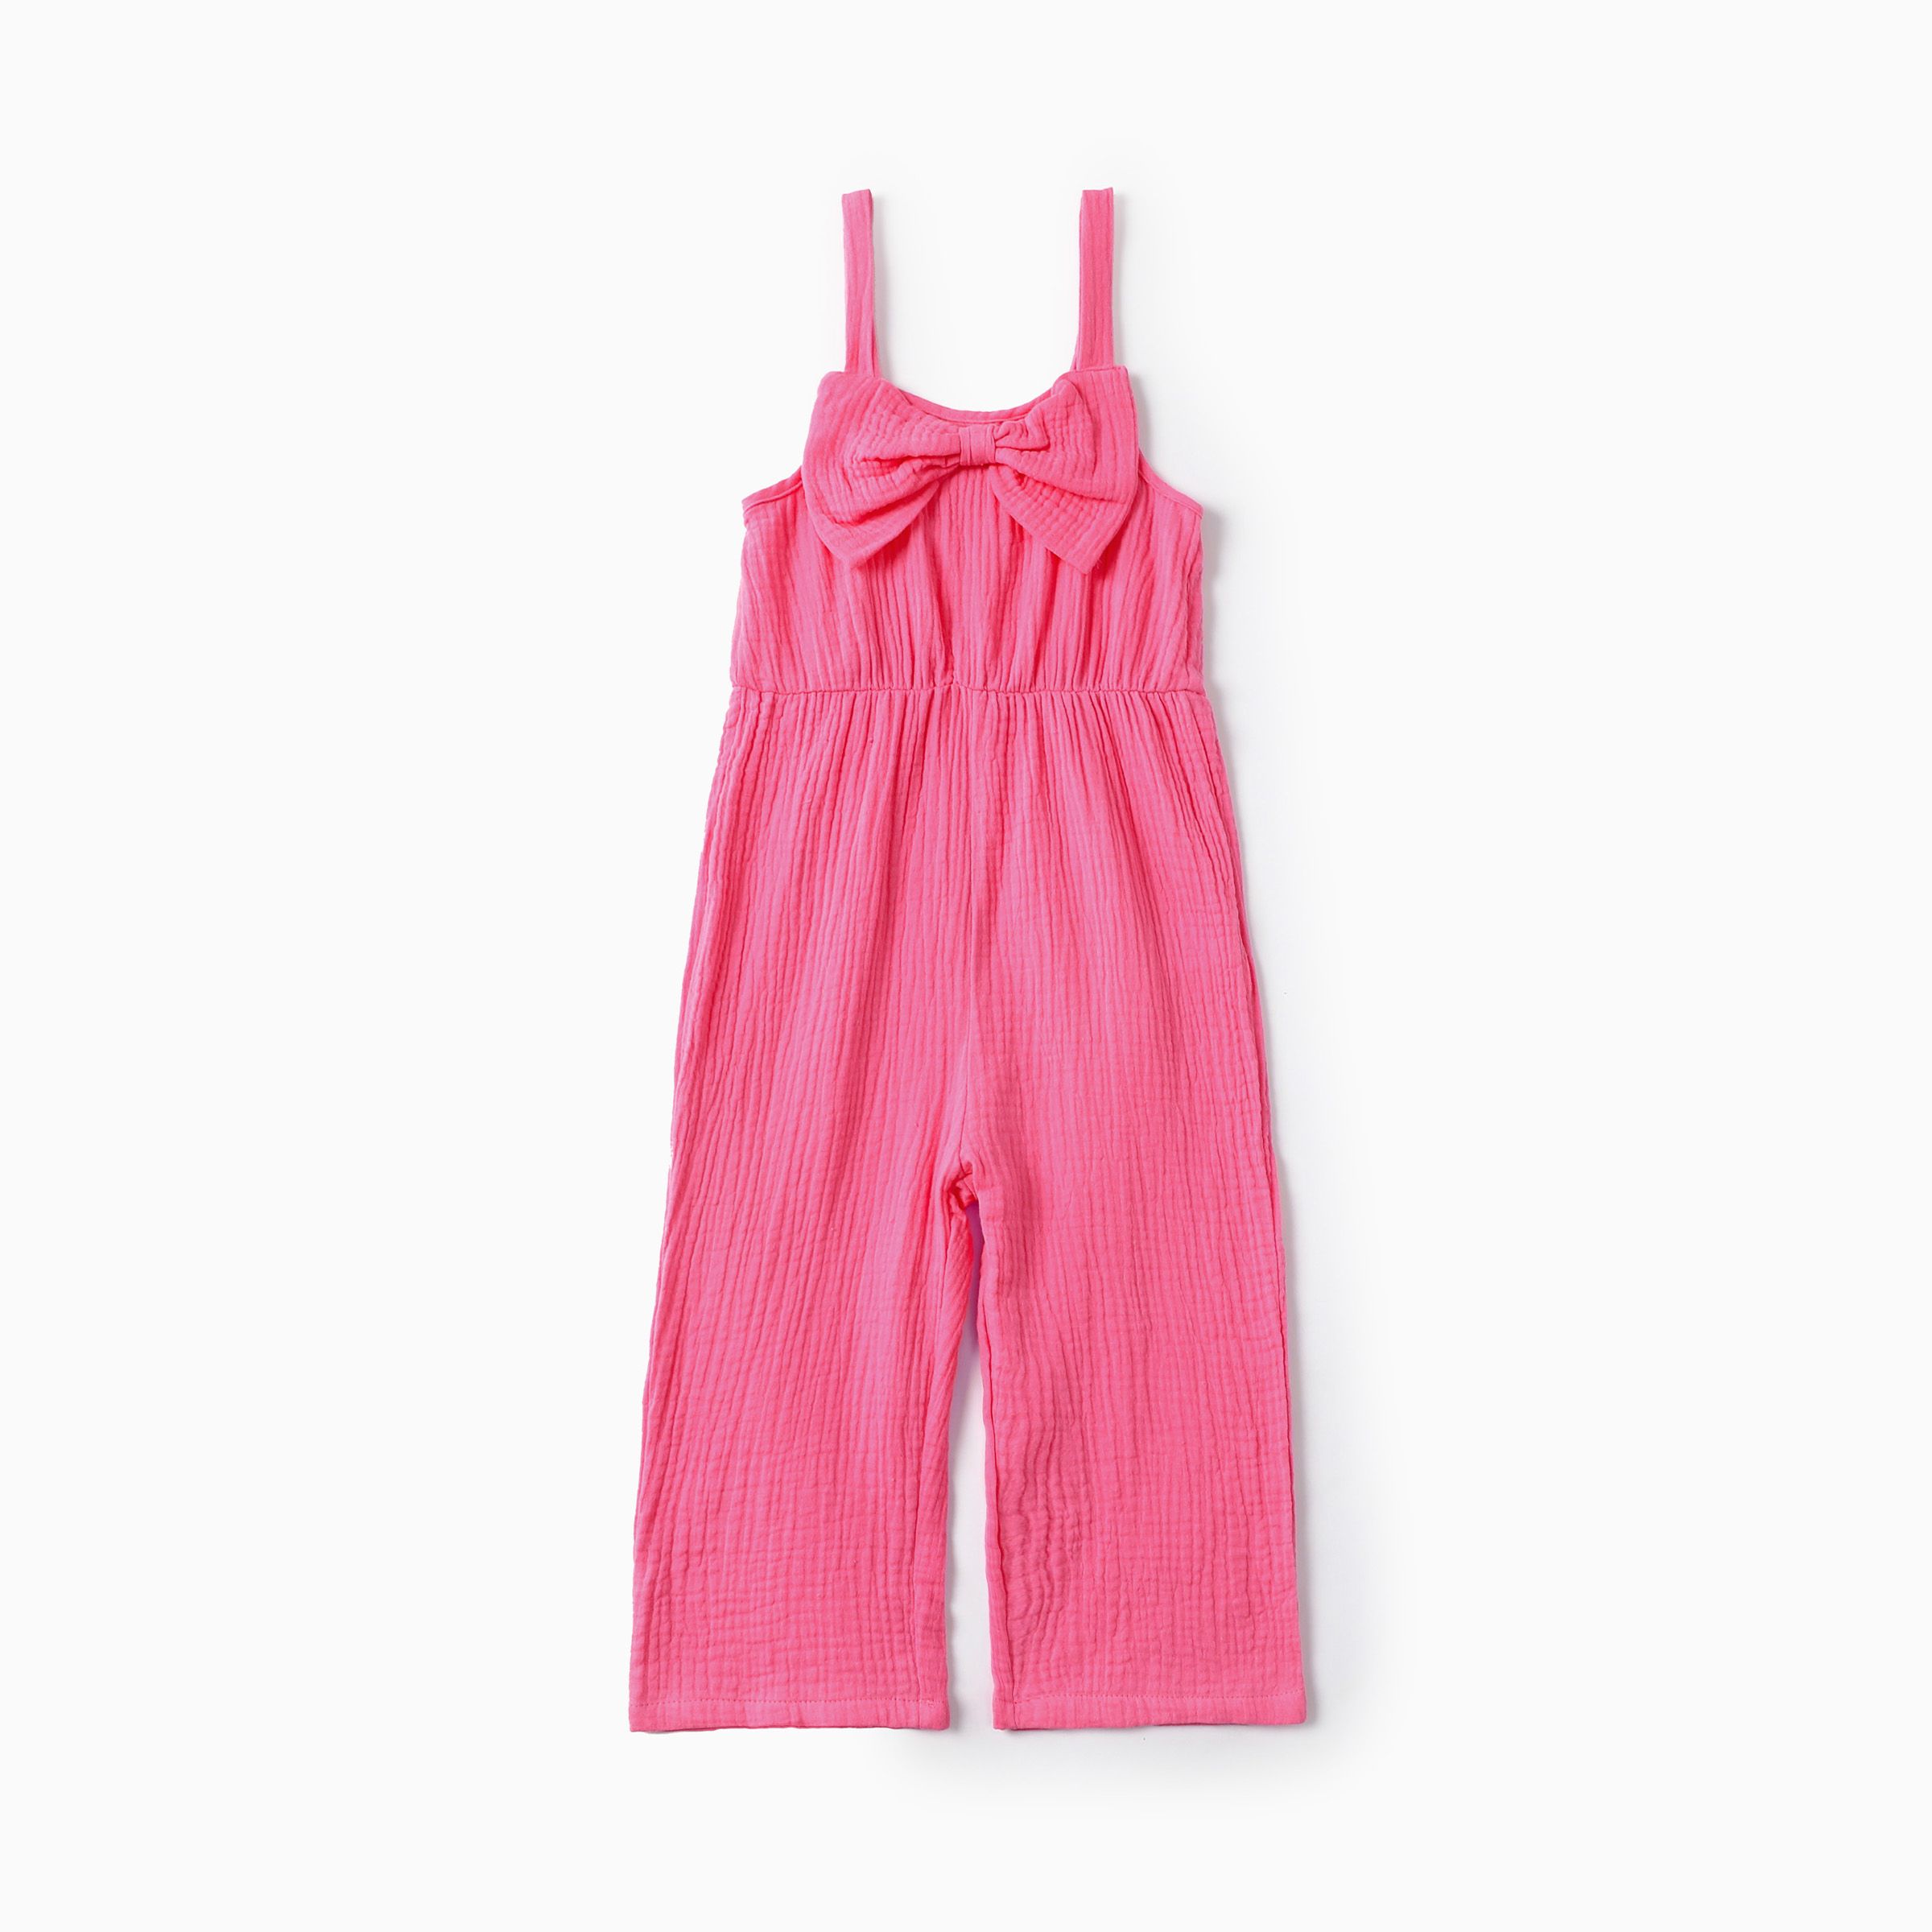 蹣跚學步的女孩甜美吊帶設計粉色棉質連體褲